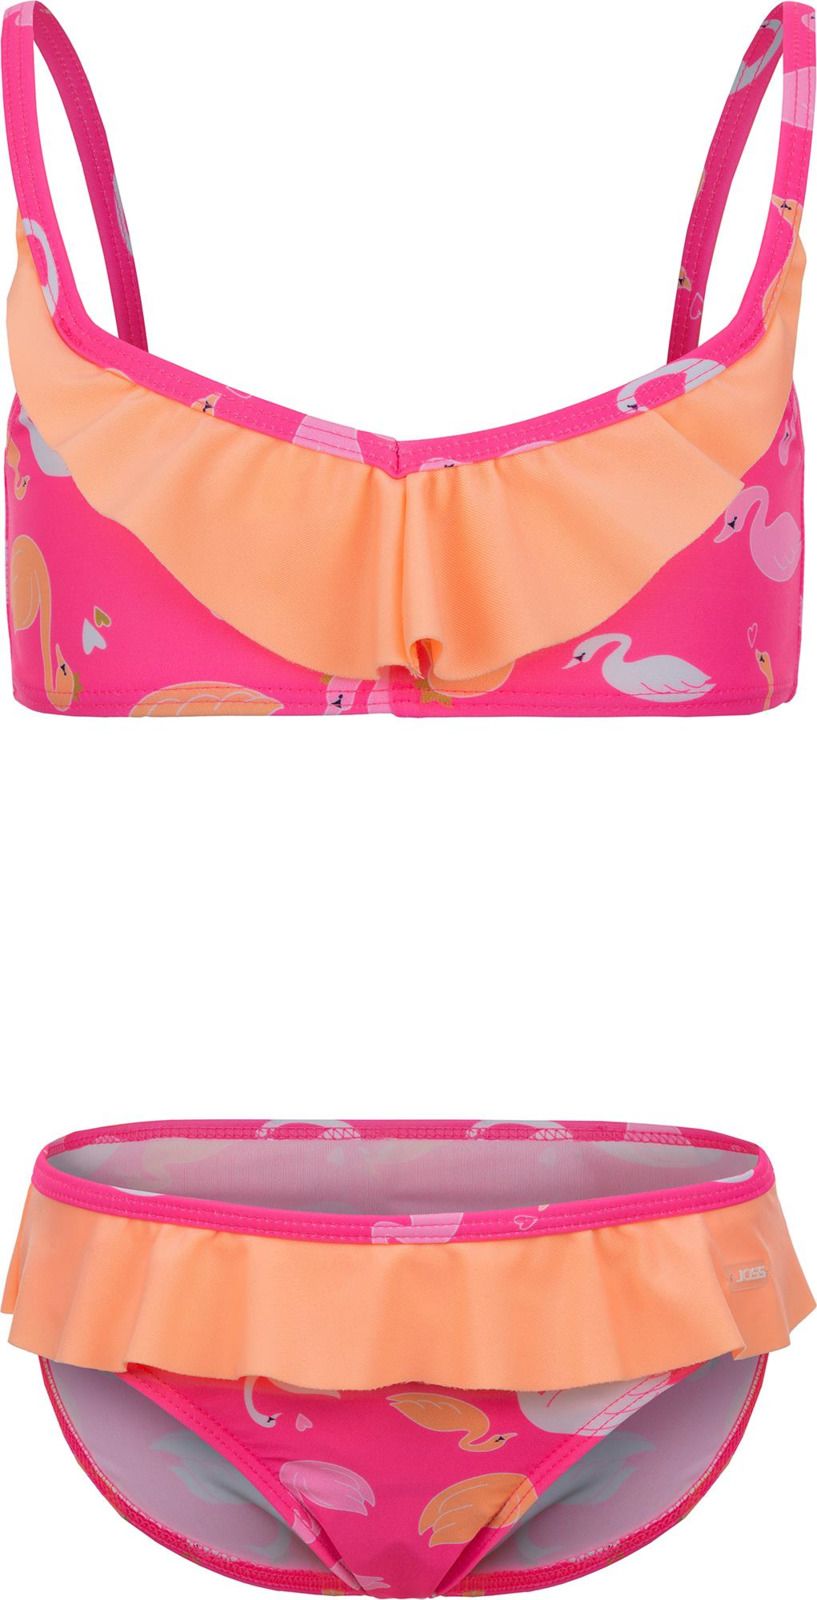     Joss Girls' Swimsuit, : -. GSB07S6-X0.  110